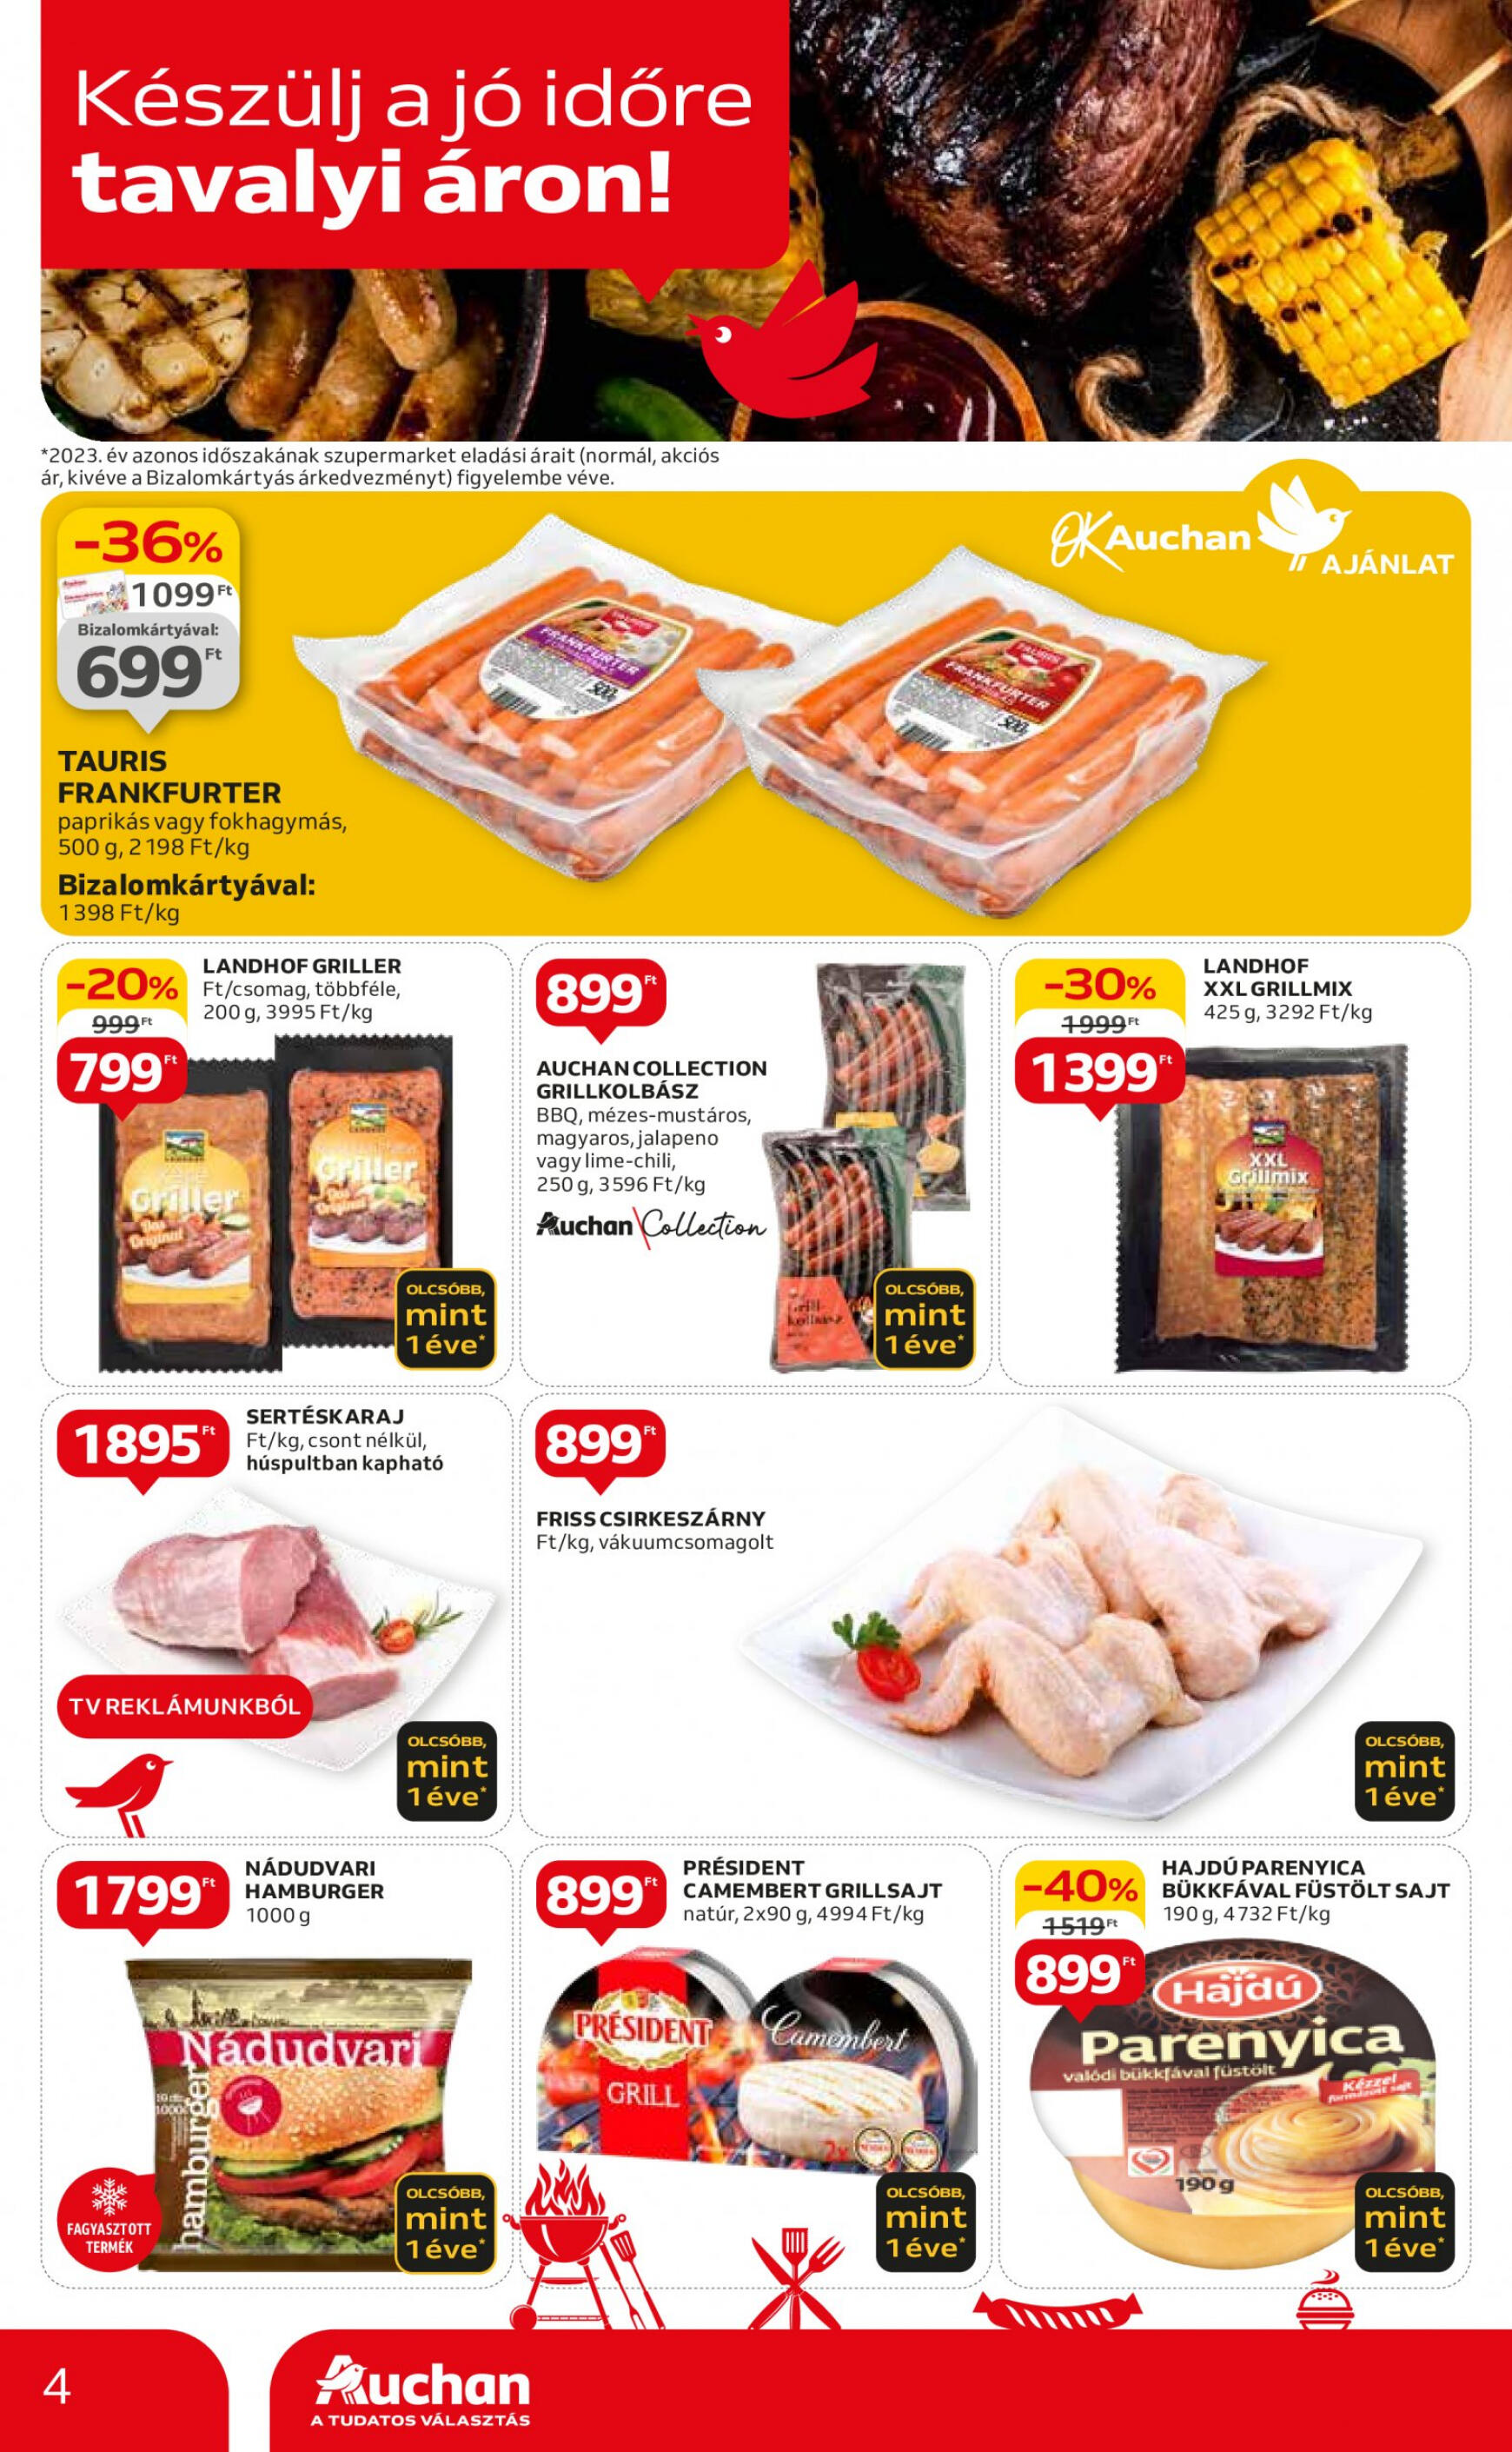 auchan - Aktuális újság Auchan szupermarket 05.09. - 05.15. - page: 4